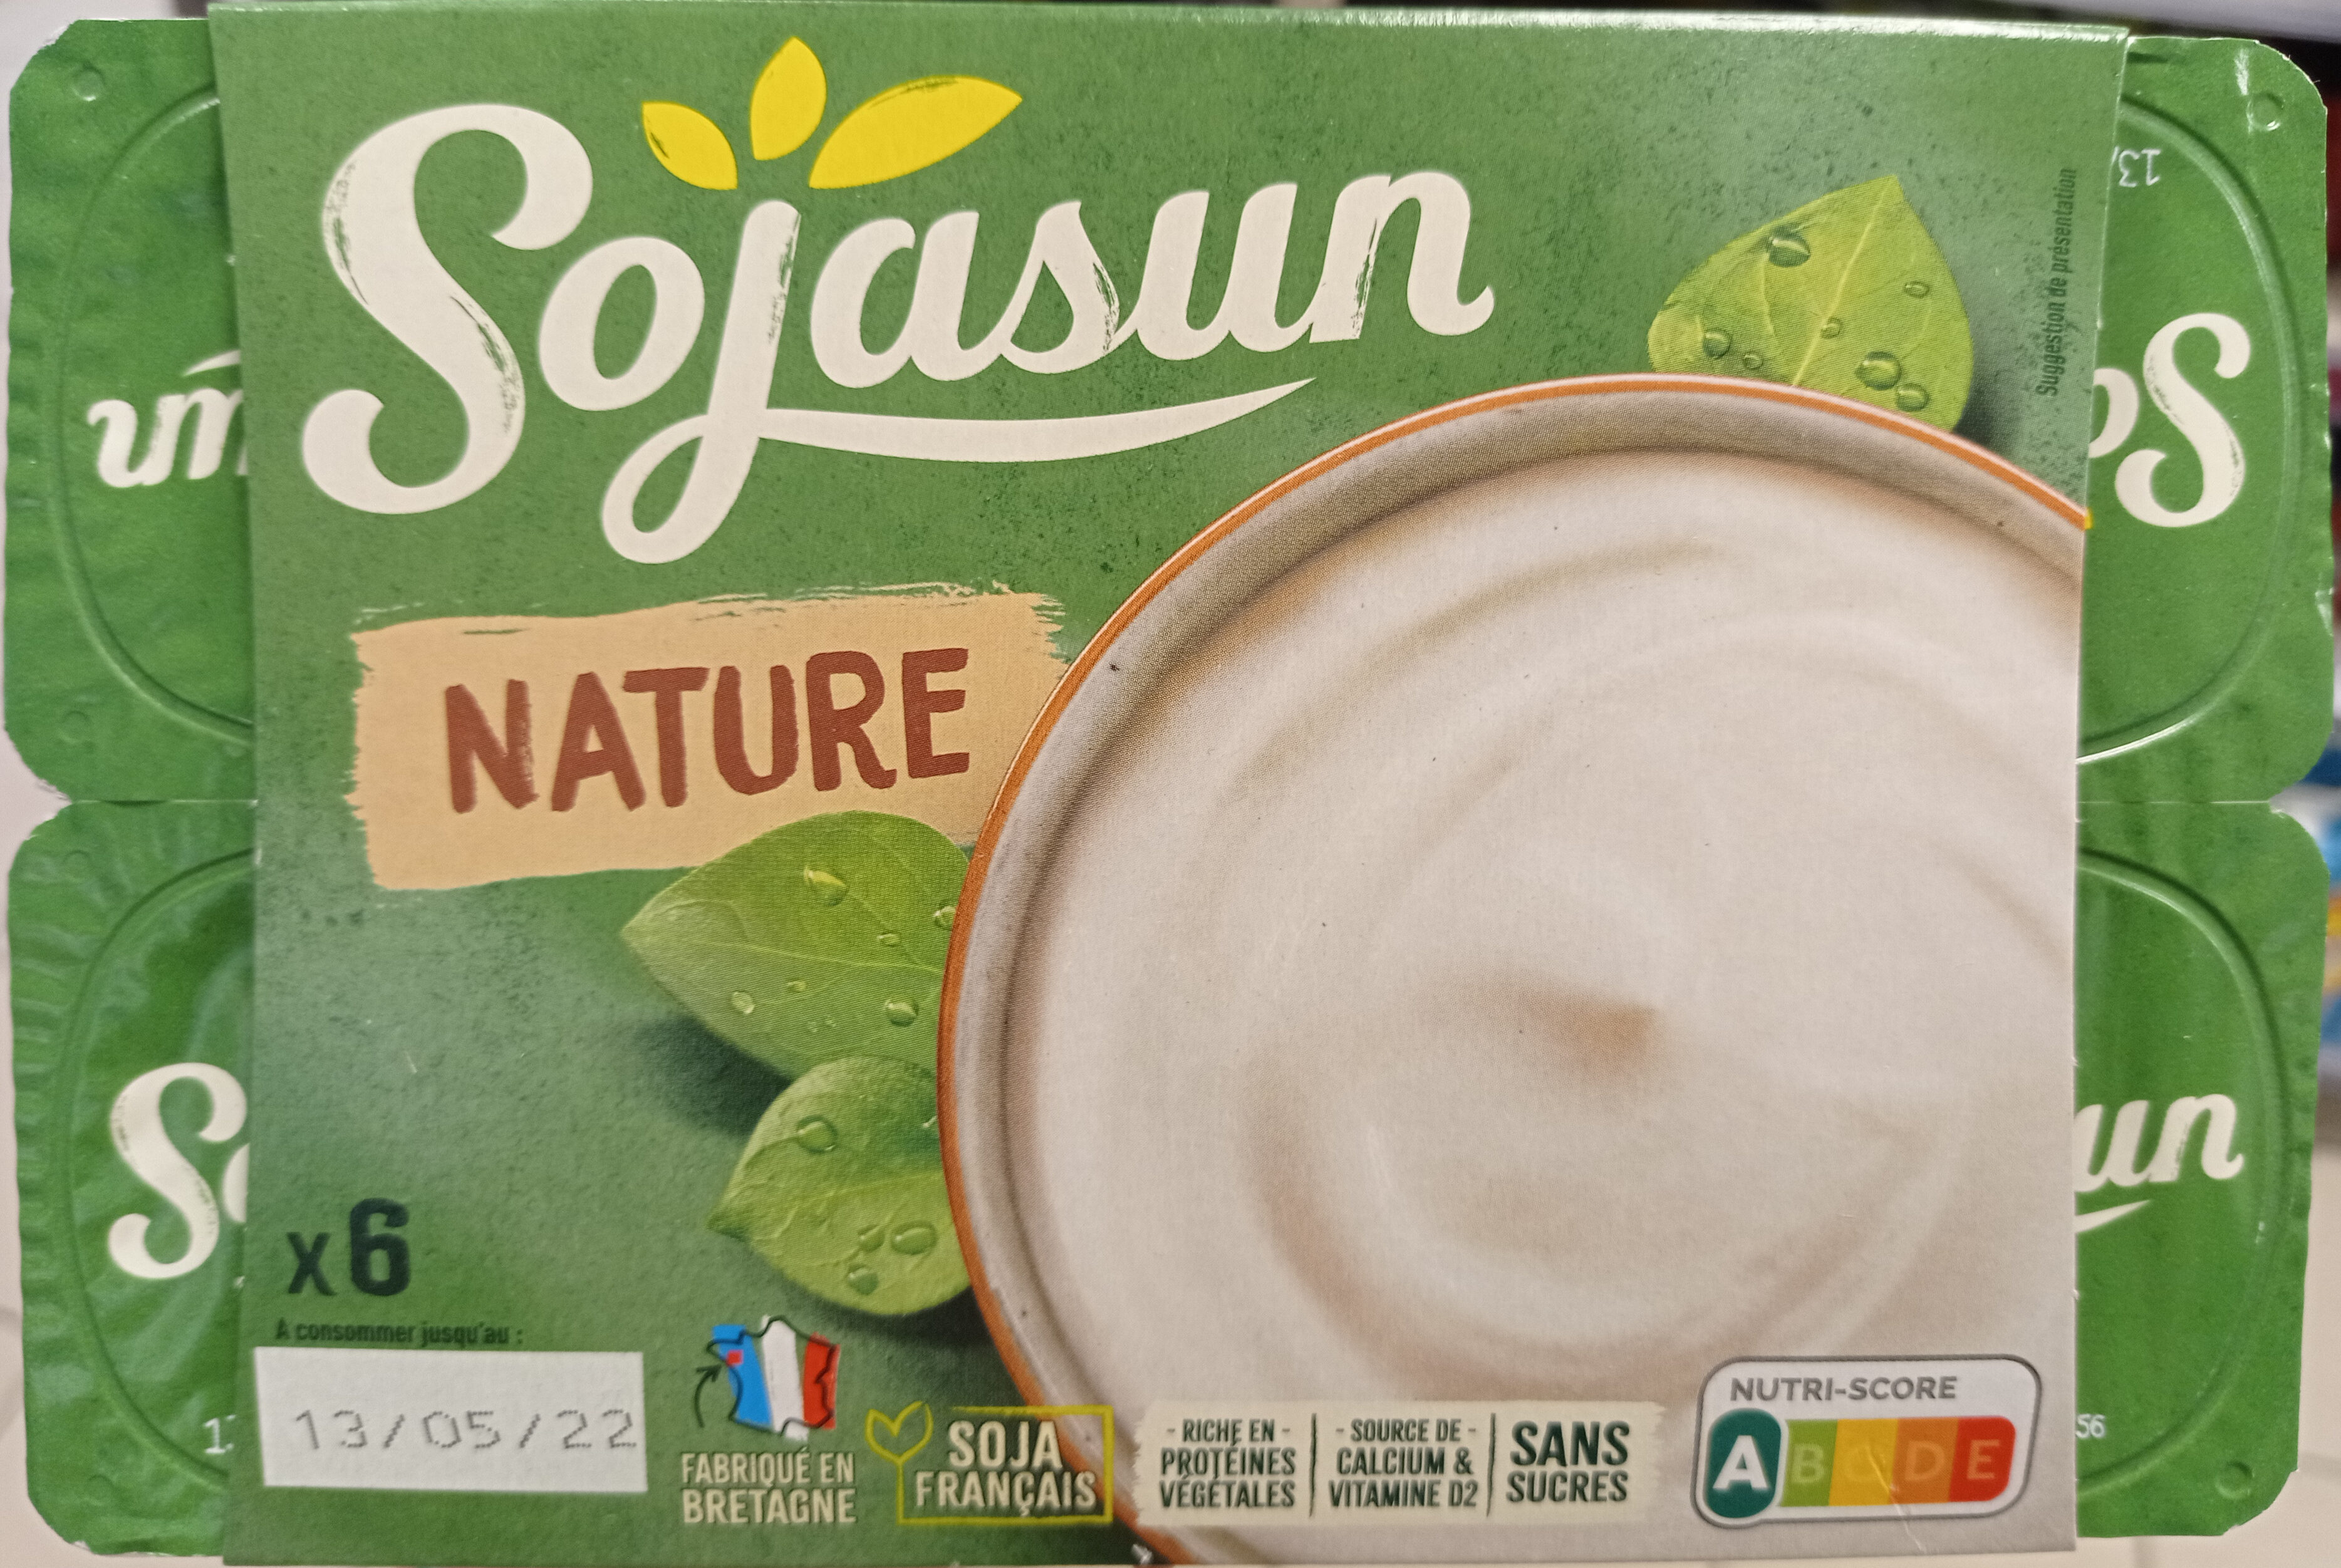 Sojasun nature - Product - fr